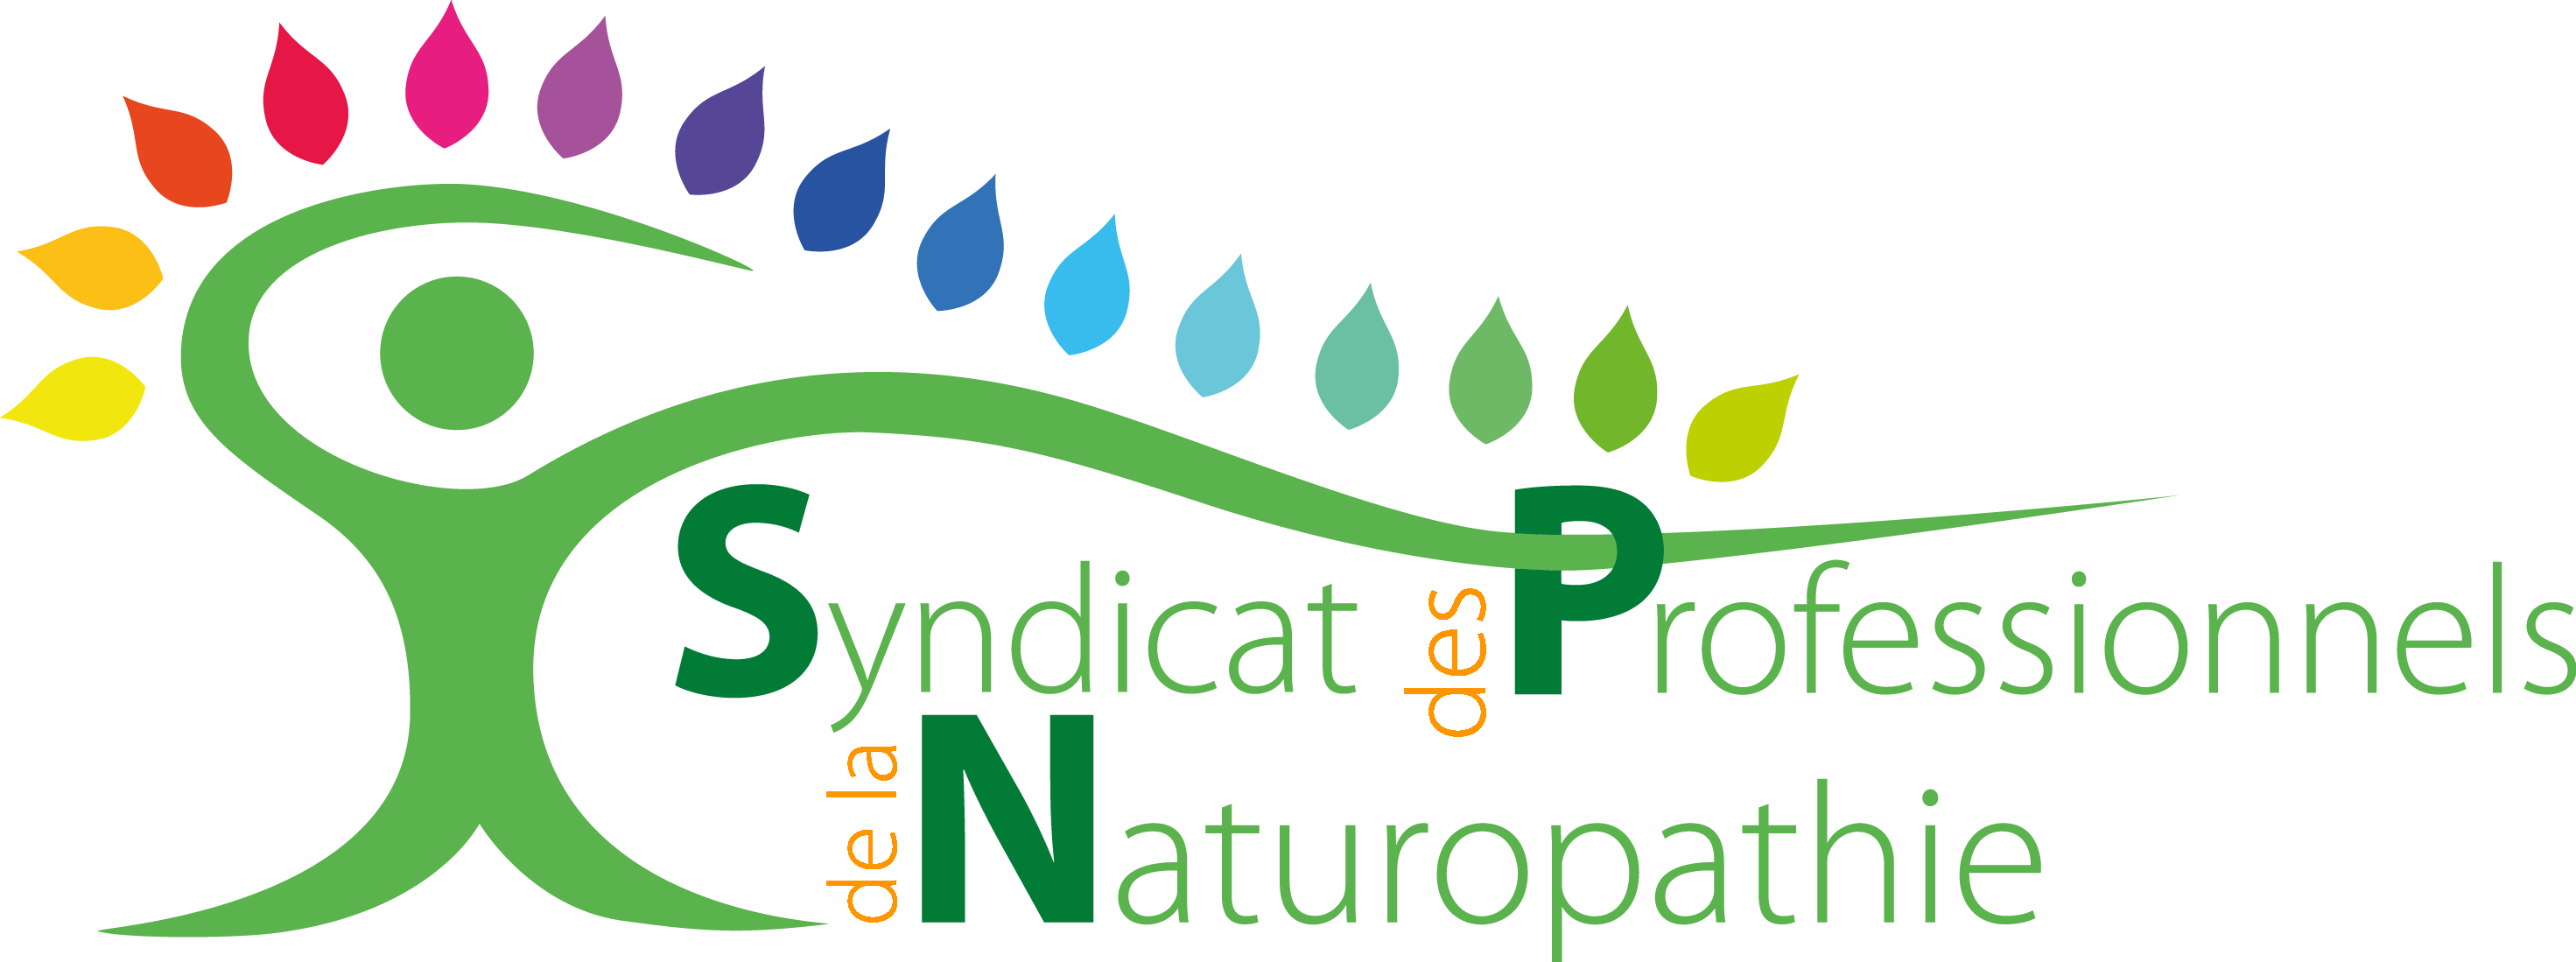 Chambre Syndicale des professionnels de la naturopathie